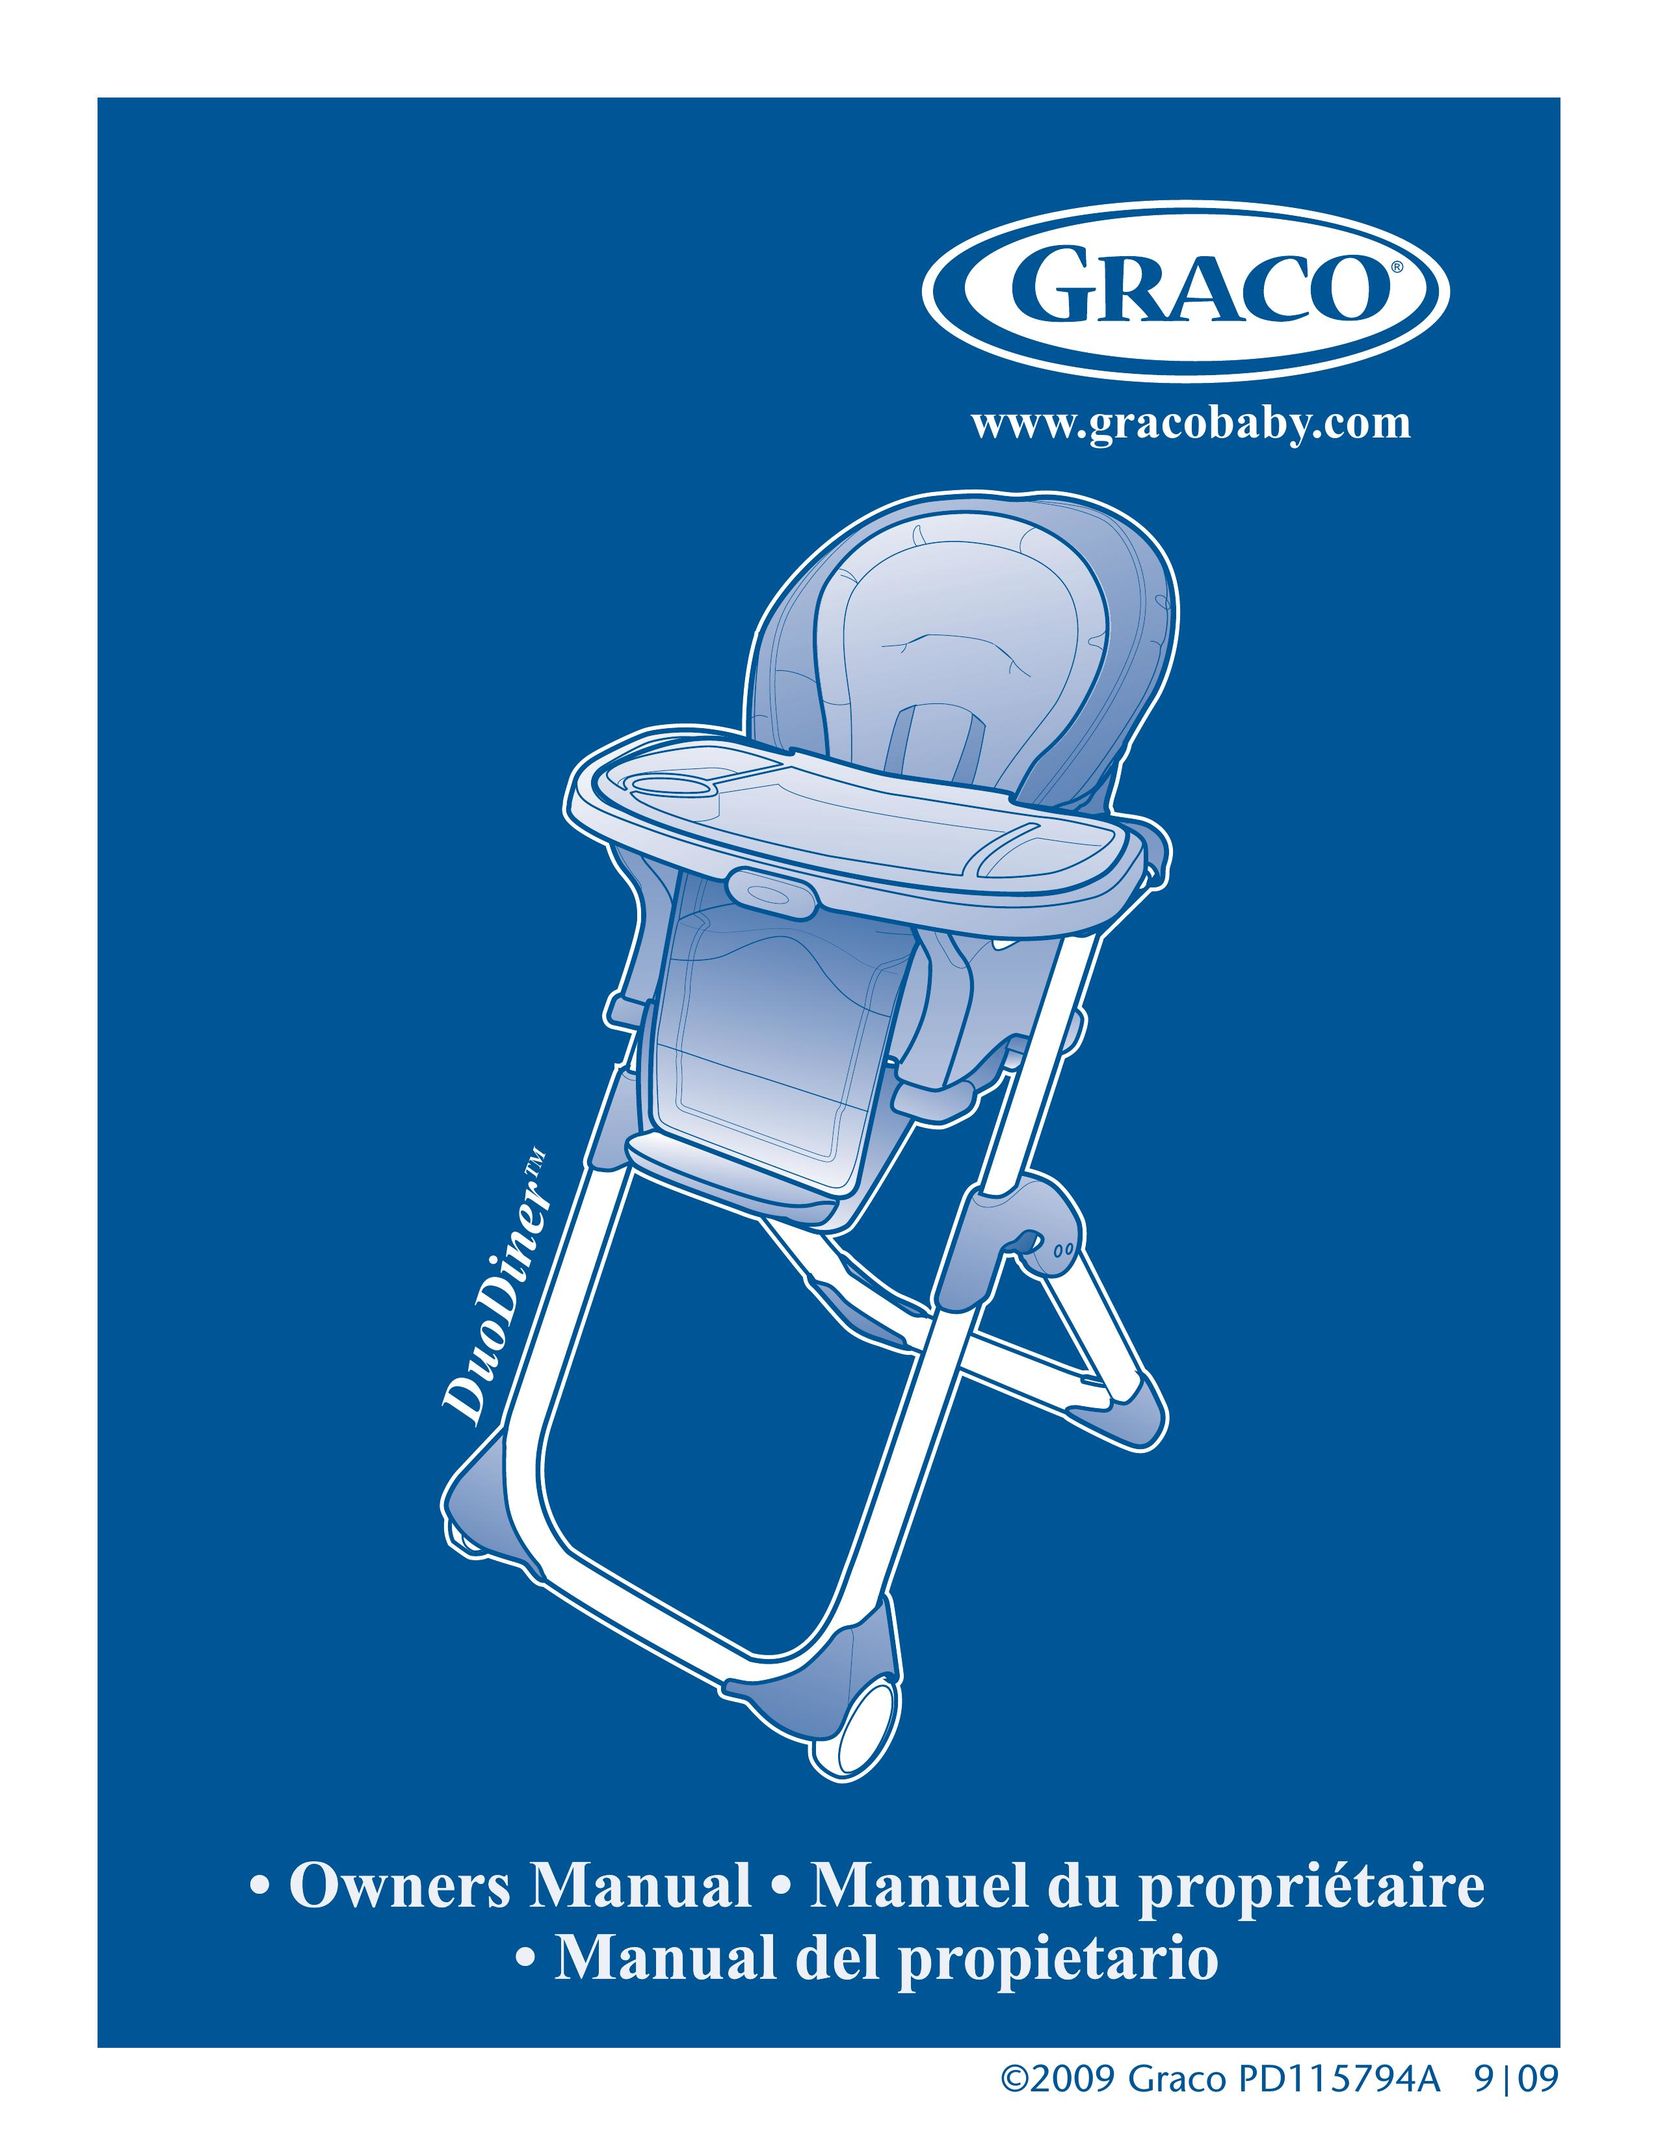 Graco 1762131 High Chair User Manual